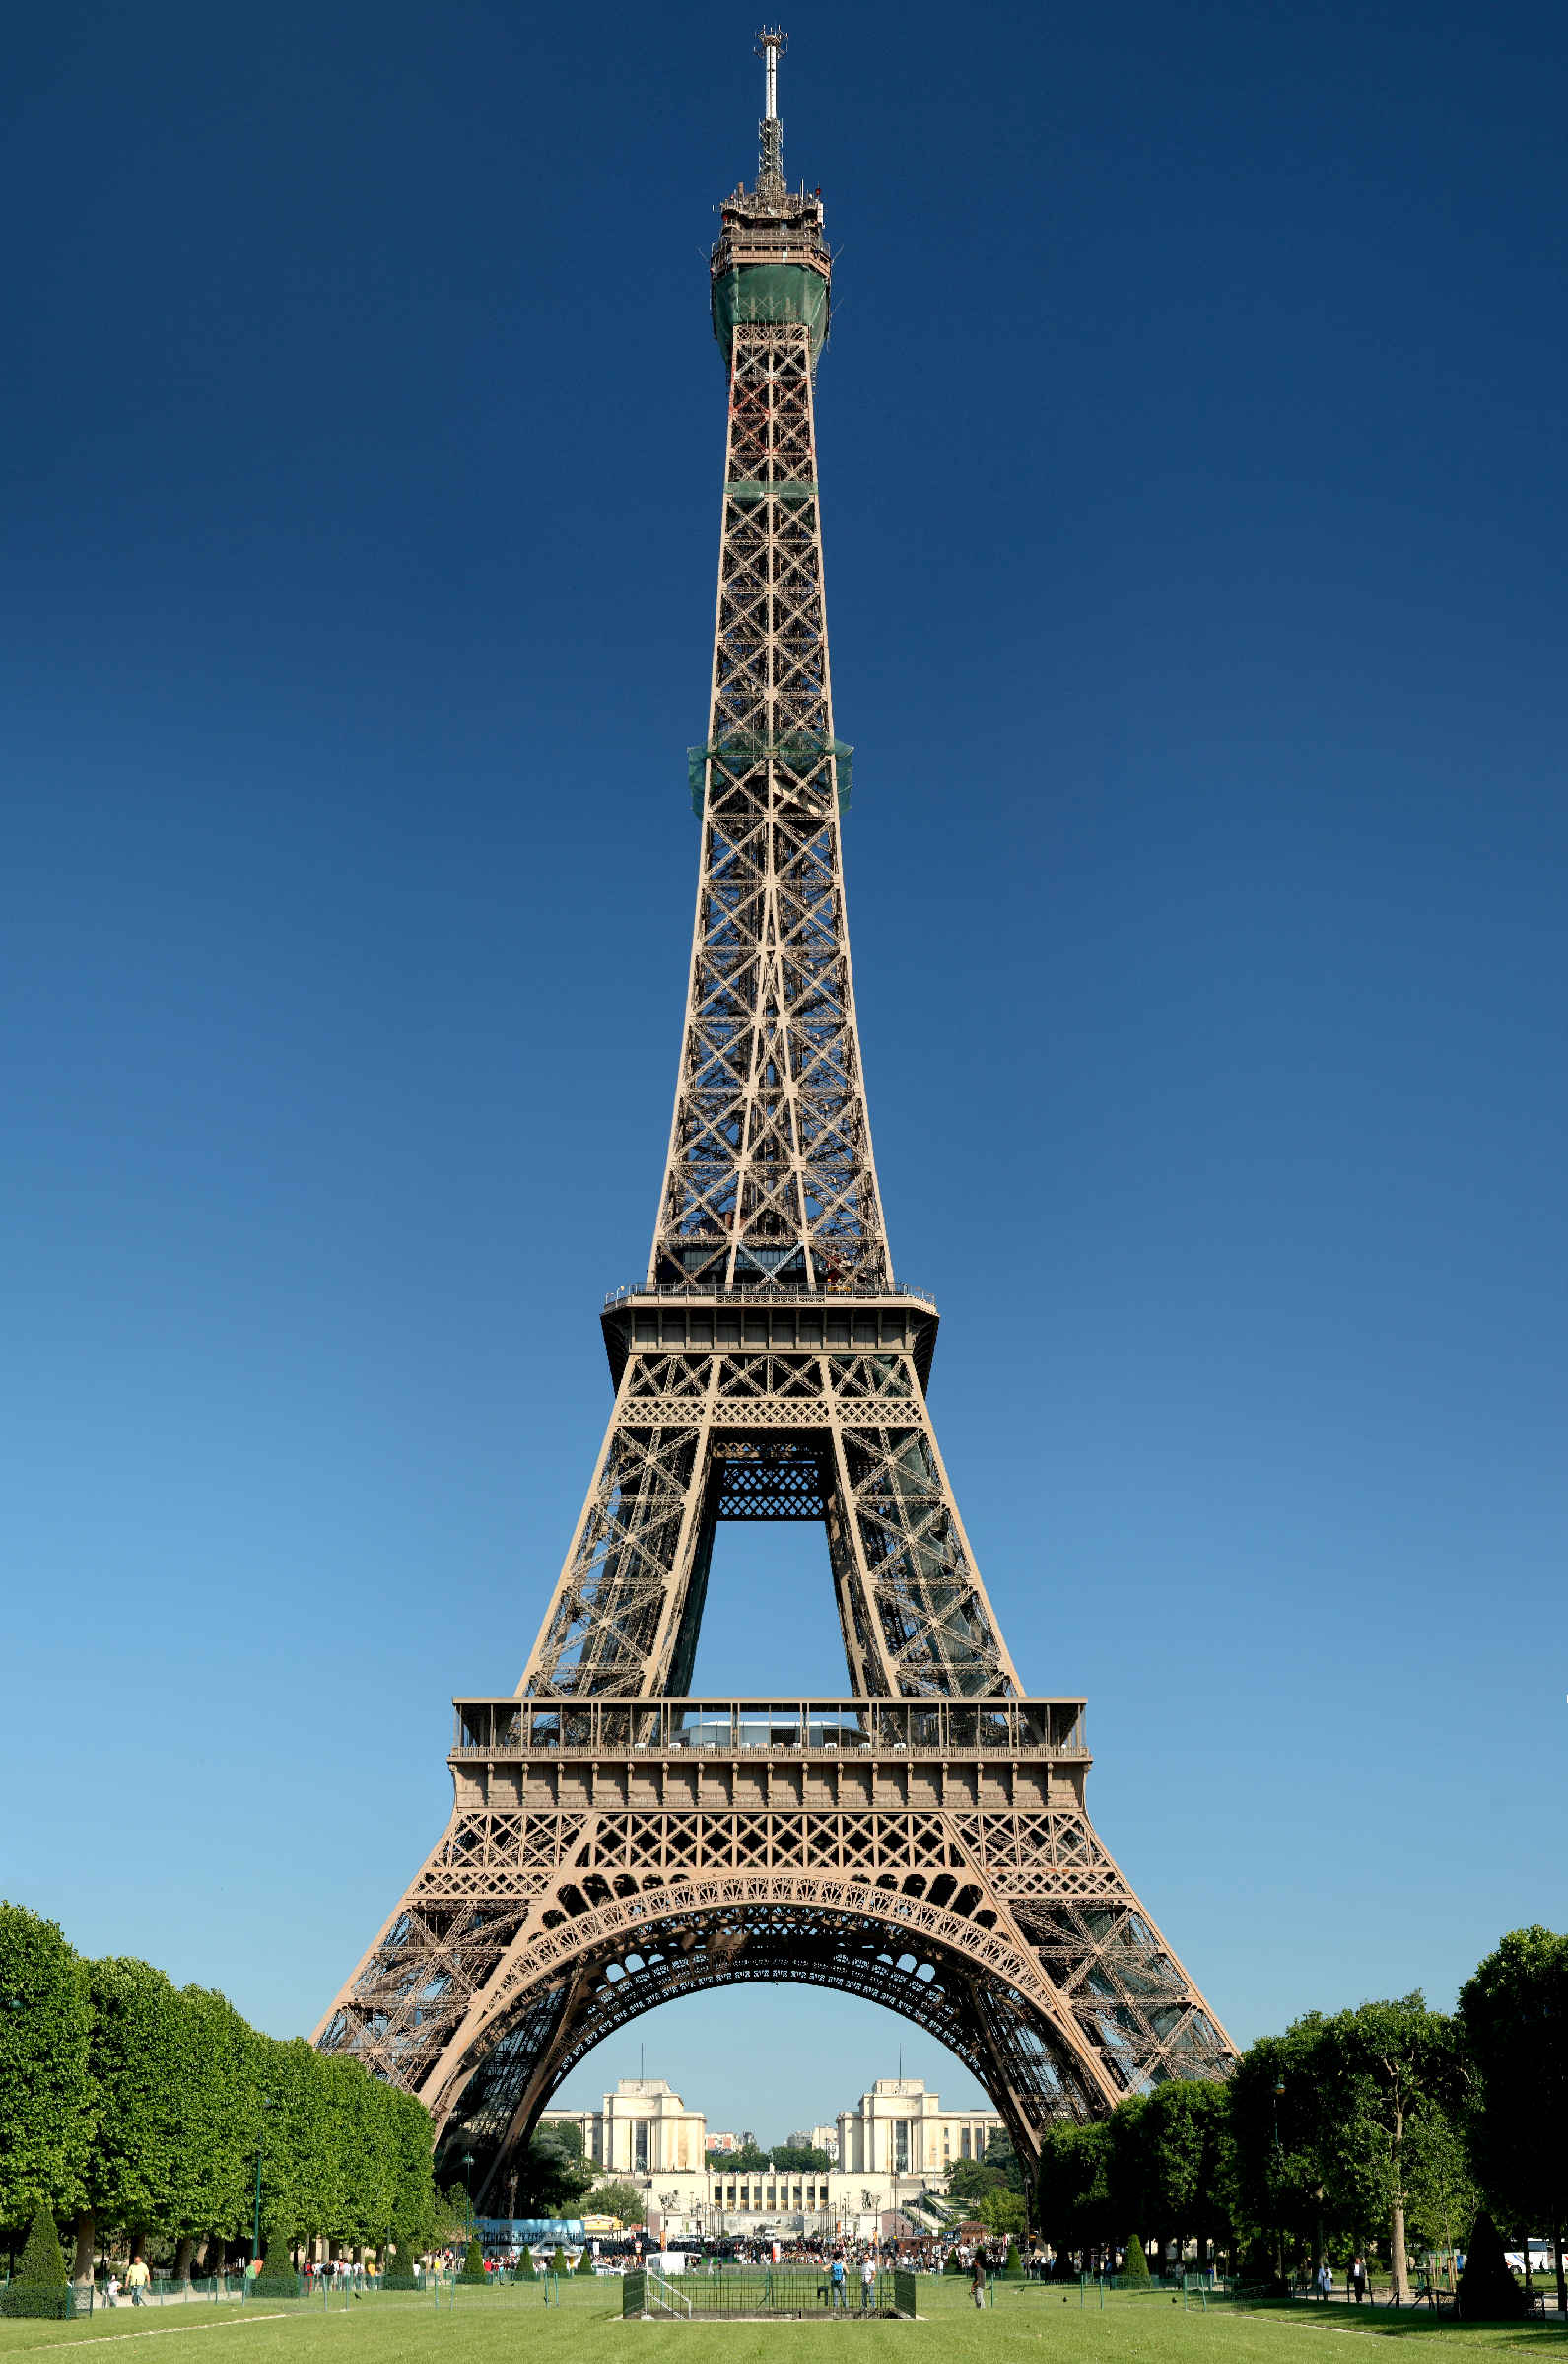 UNESCO World Heritage Site, the Eiffel Tower, Paris, France